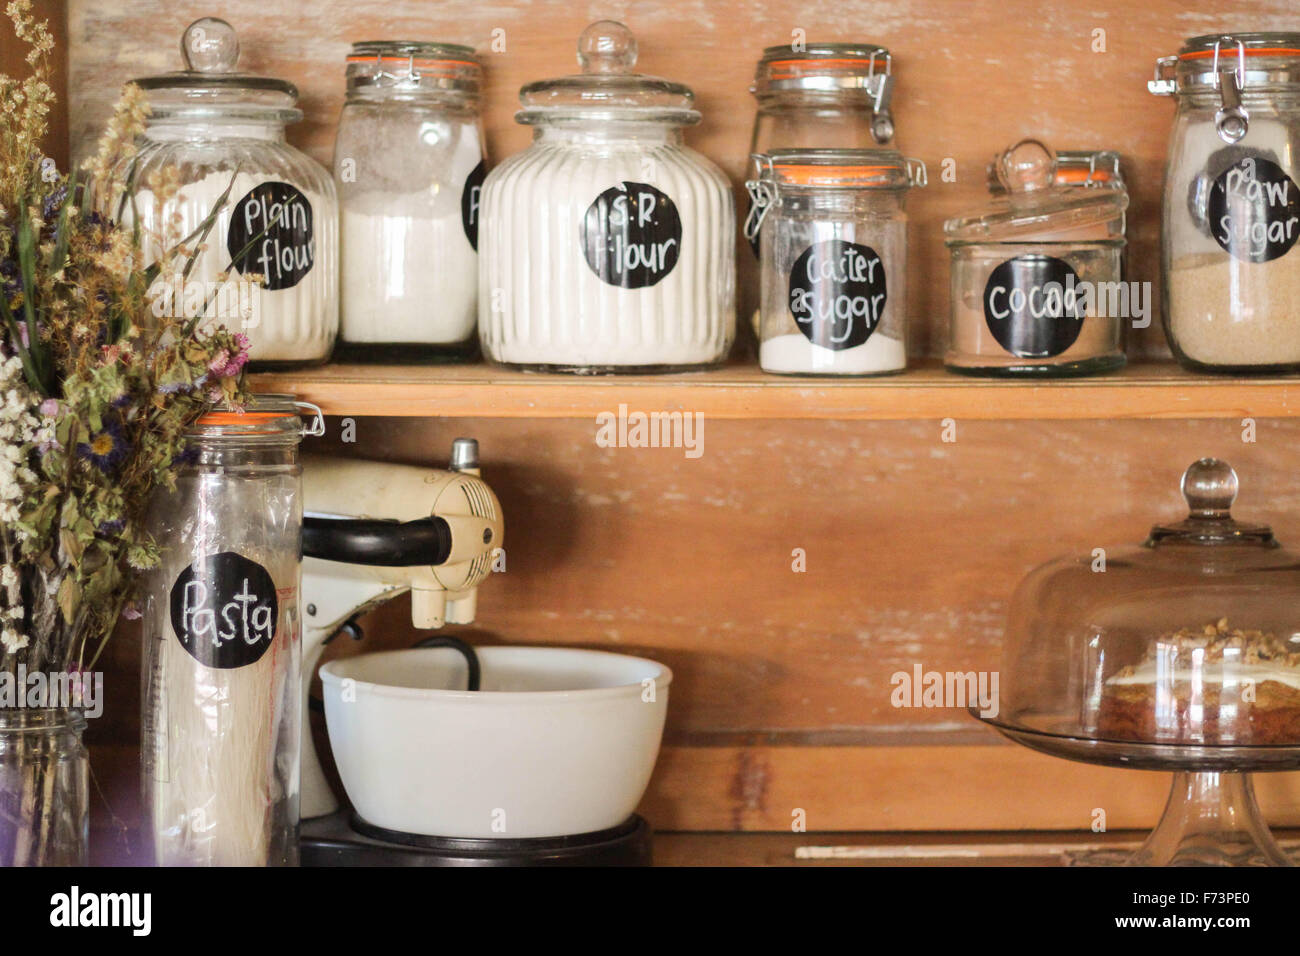 Backzutaten auf eine antike Küche Stall angezeigt. Eine stilvolle Möglichkeit, Ihre Grundnahrungsmittel wie Mehl, Zucker, Nudeln etc. zu speichern. Stockfoto